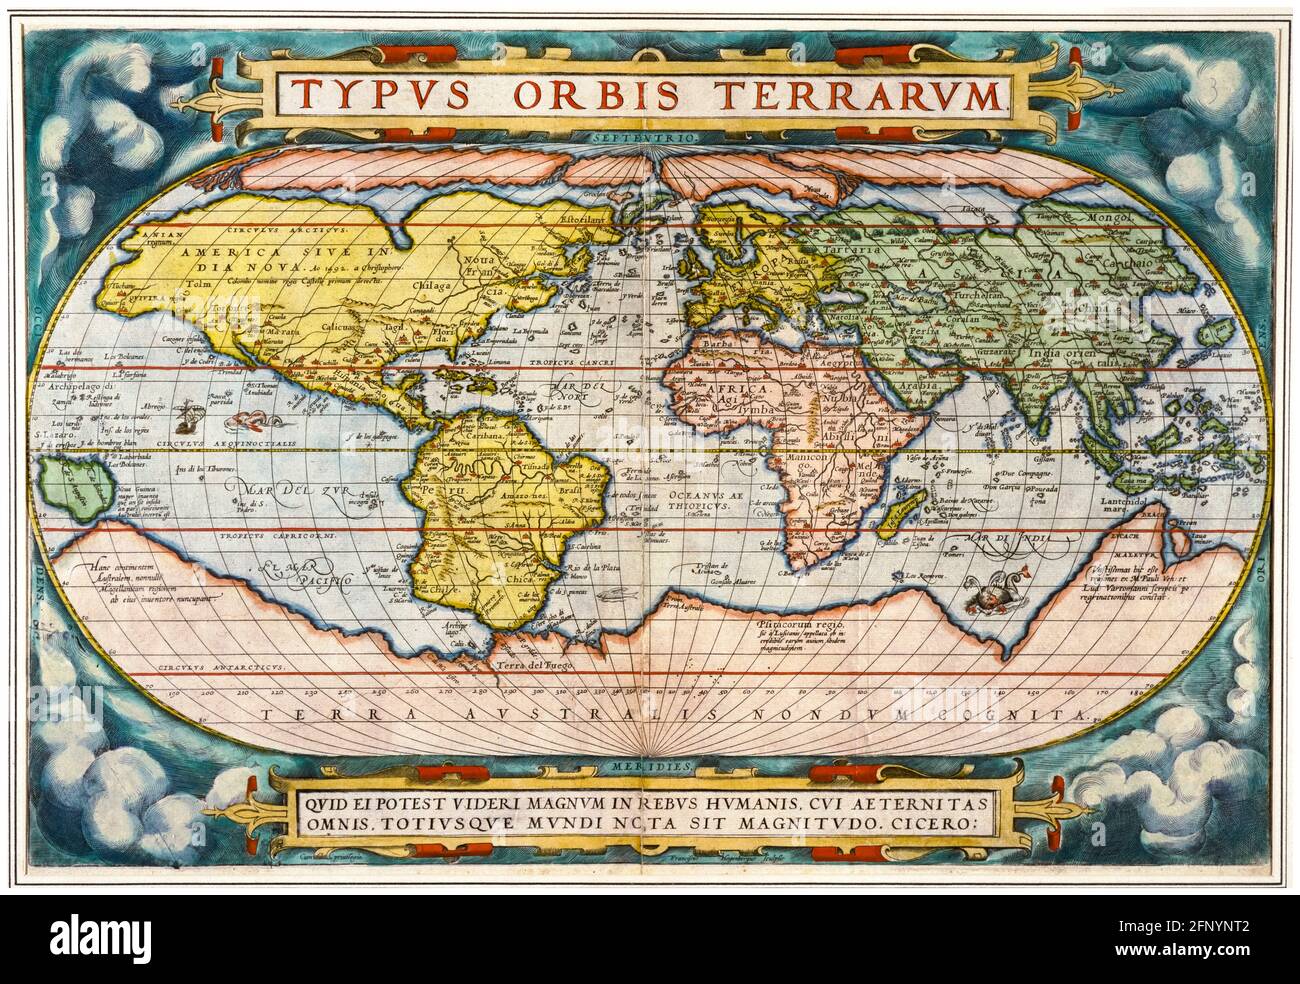 16th siècle, carte du monde d'époque de 'Theatrum Orbis Terrarum' (Théâtre du monde entier), imprimé par Abraham Ortelius, 1570 Banque D'Images